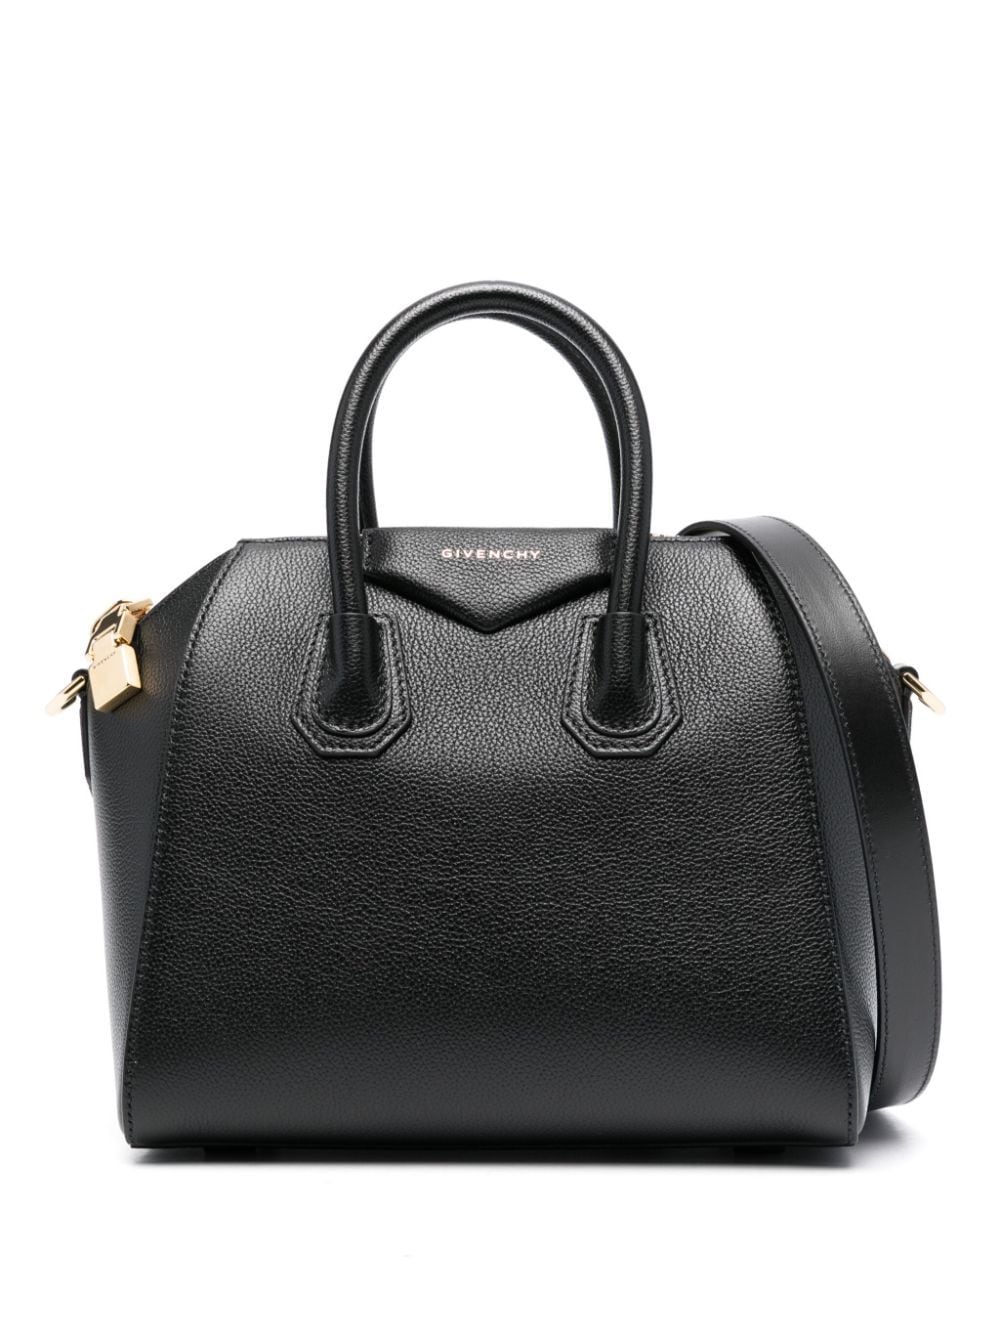 Givenchy Mini Antigona Leather Tote Bag In Black